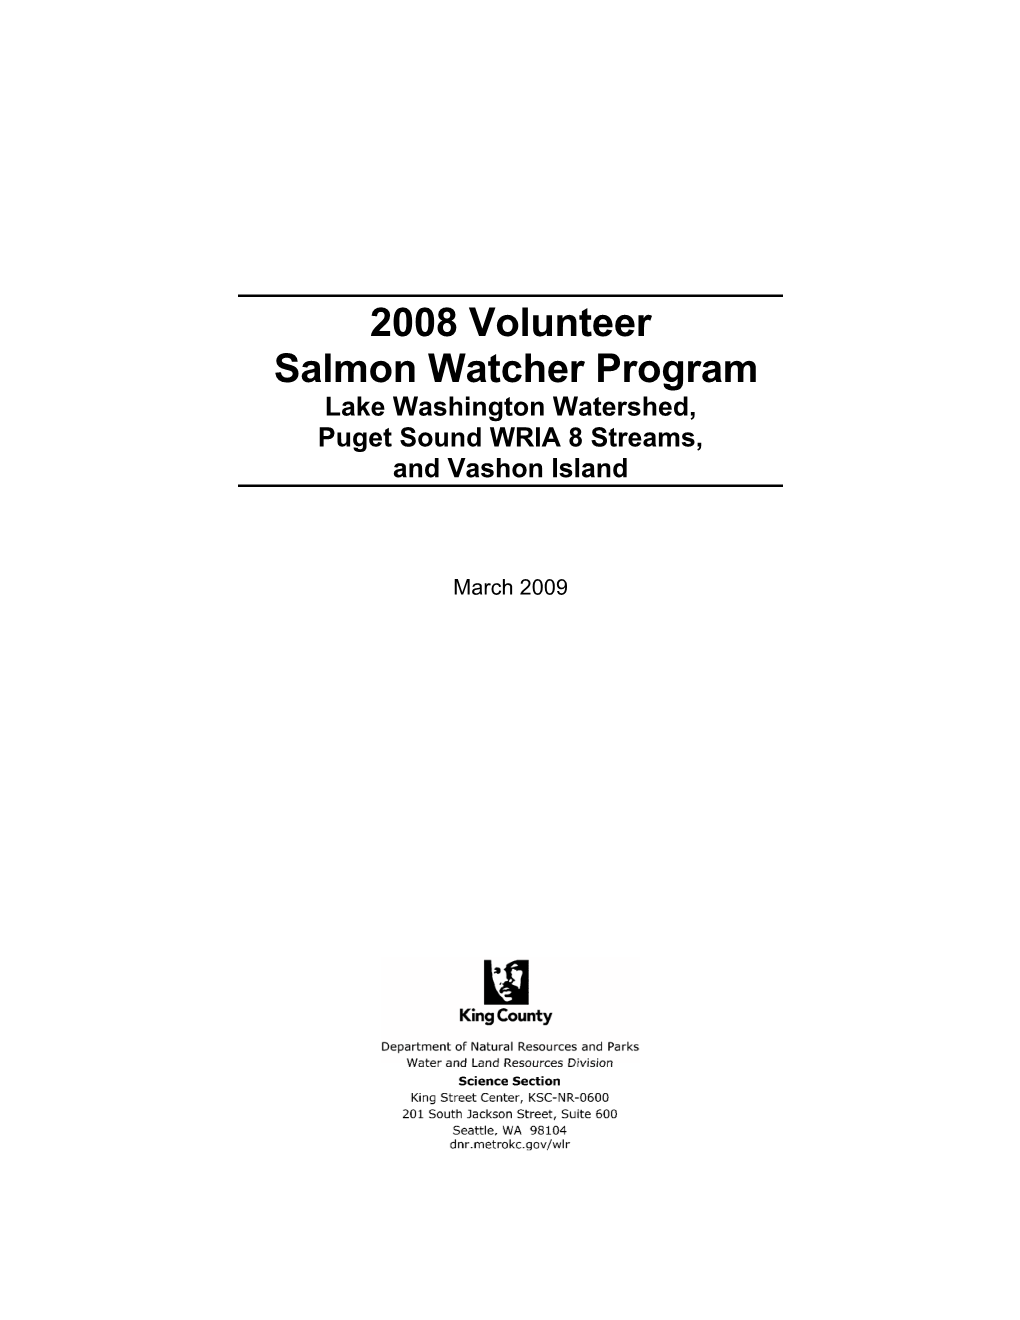 2008 Volunteer Salmon Watcher Report